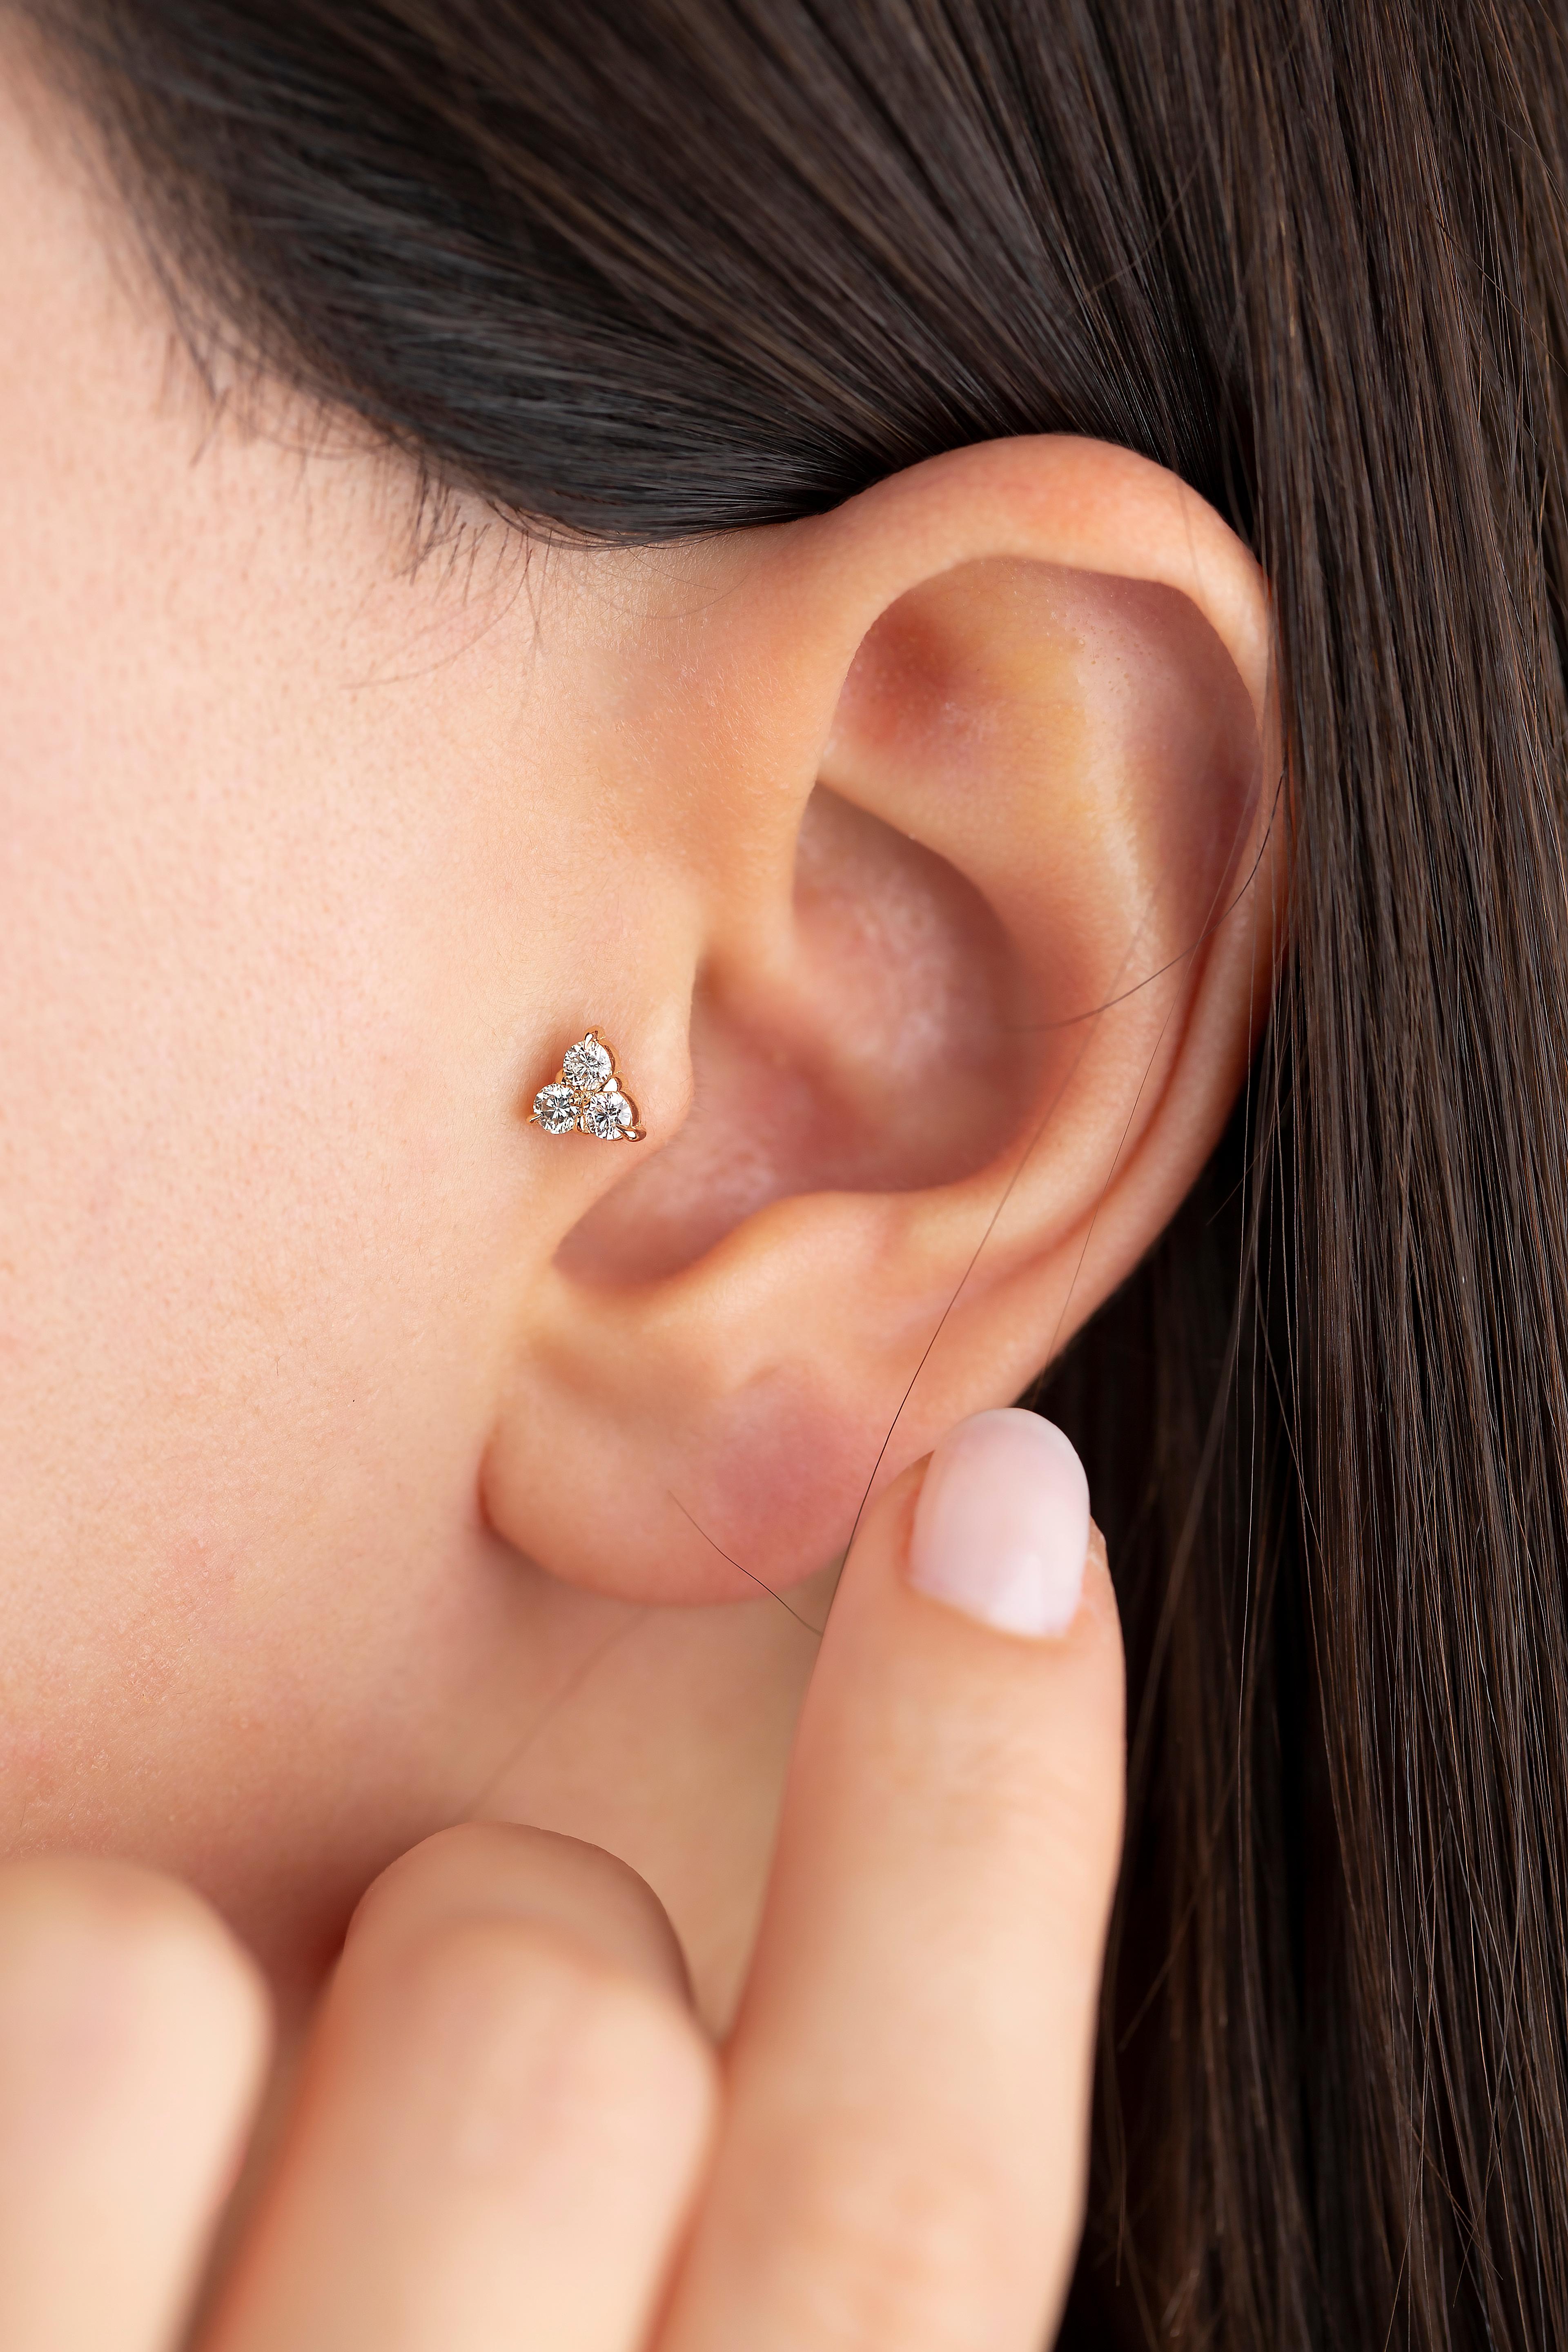 piercing en or 14K 0,21 ct Tria Diamonds, boucle d'oreille en or 0,21 ct Triple Diamonds

Vous pouvez également utiliser le piercing comme boucle d'oreille ! Ce piercing convient également pour le tragus, le nez, l'hélix, le lobe, le plat, la